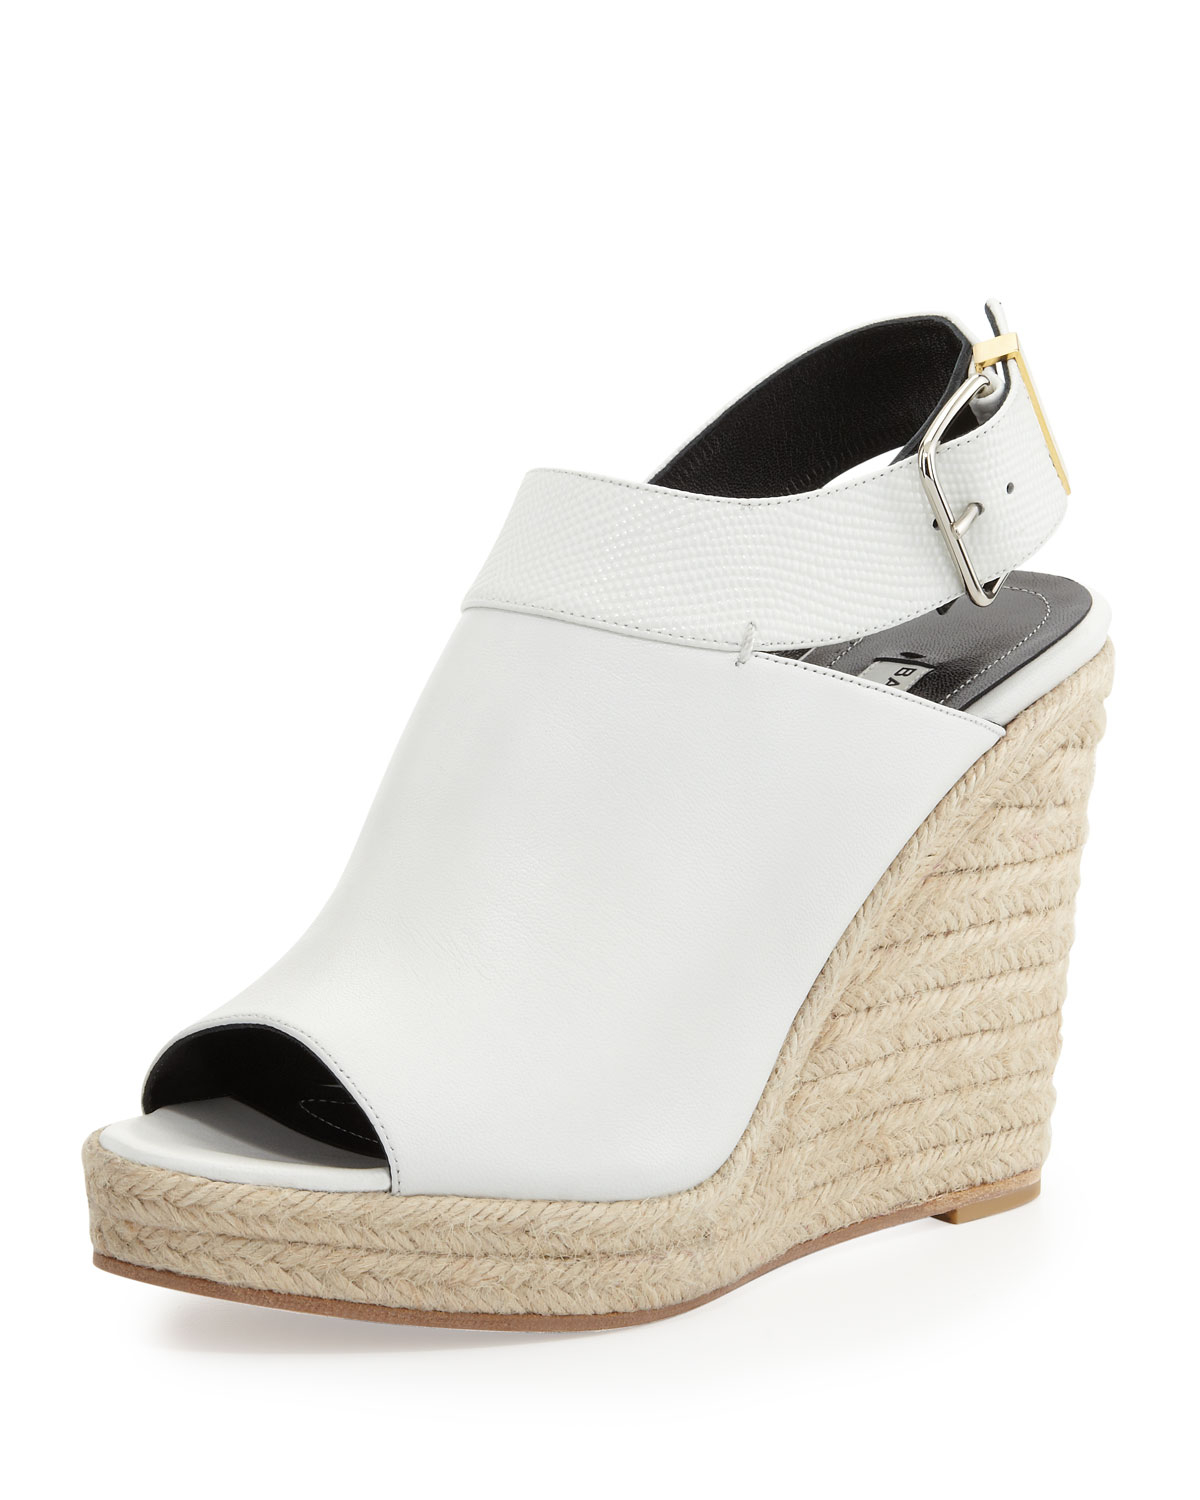 Balenciaga Slingback Glove Wedge Sandal in White | Lyst